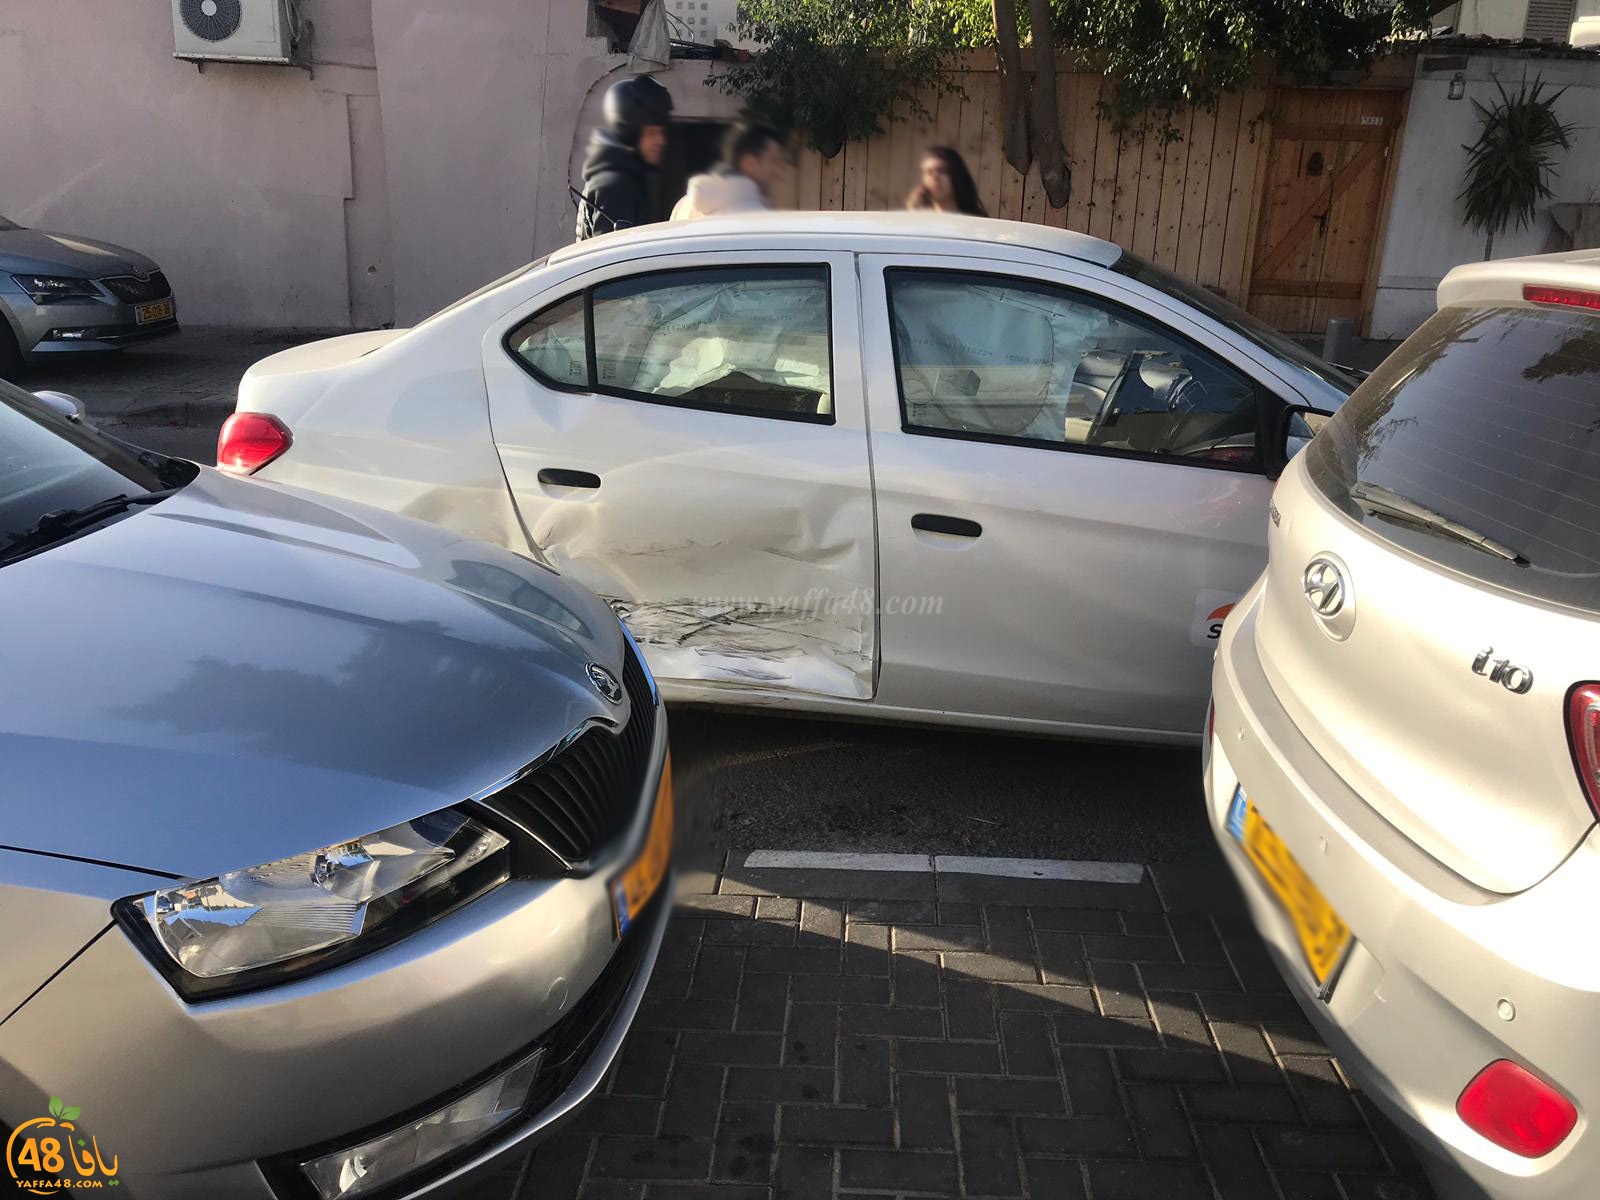  يافا: إصابة طفيفة لطفلين بحادث طرق بين مركبتين